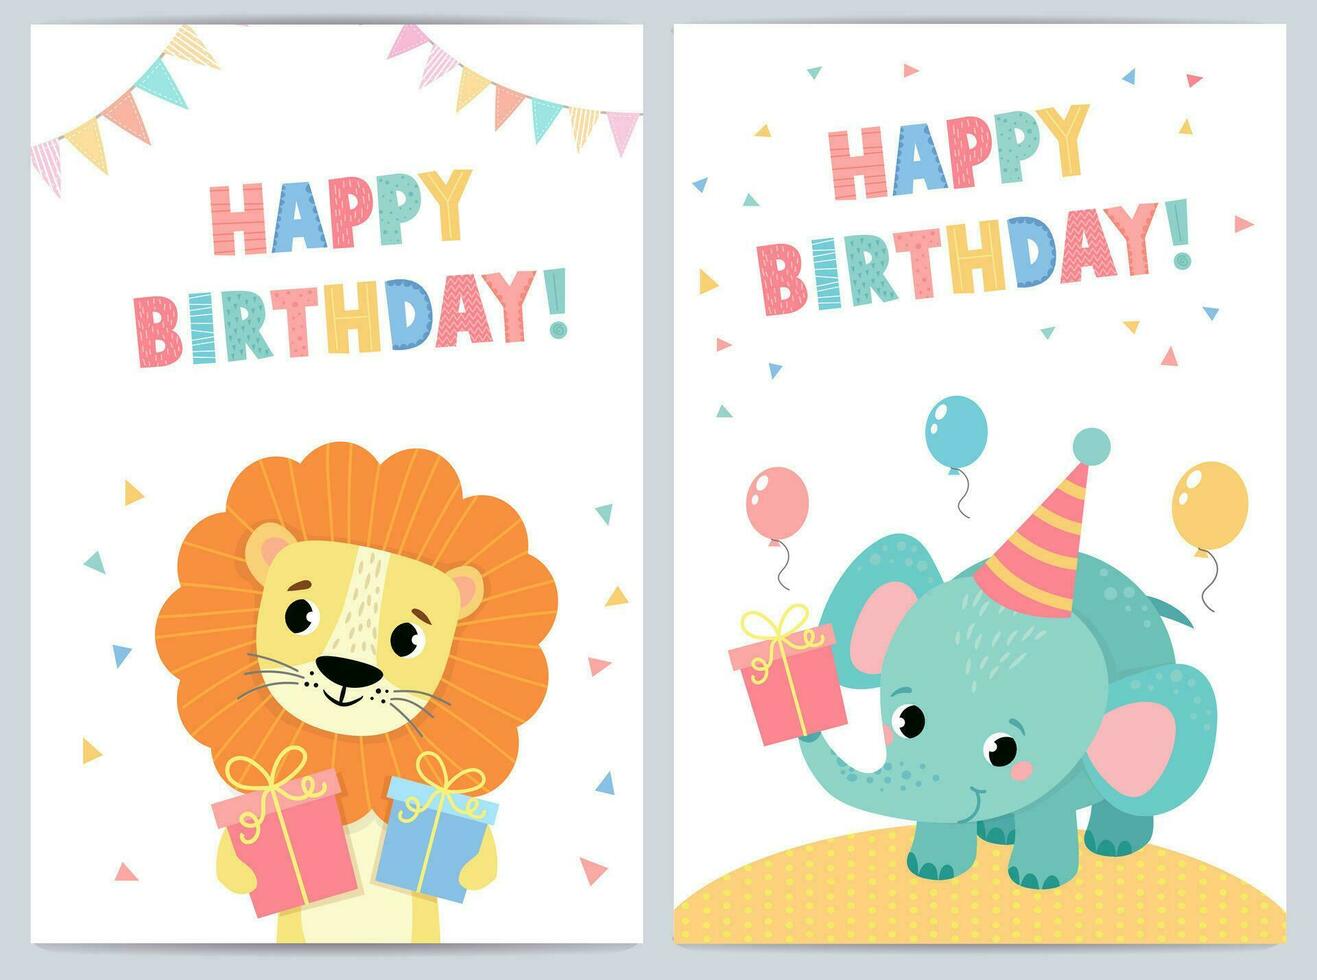 schattig verjaardag kaarten voor kinderen met grappig dieren. vector illustratie